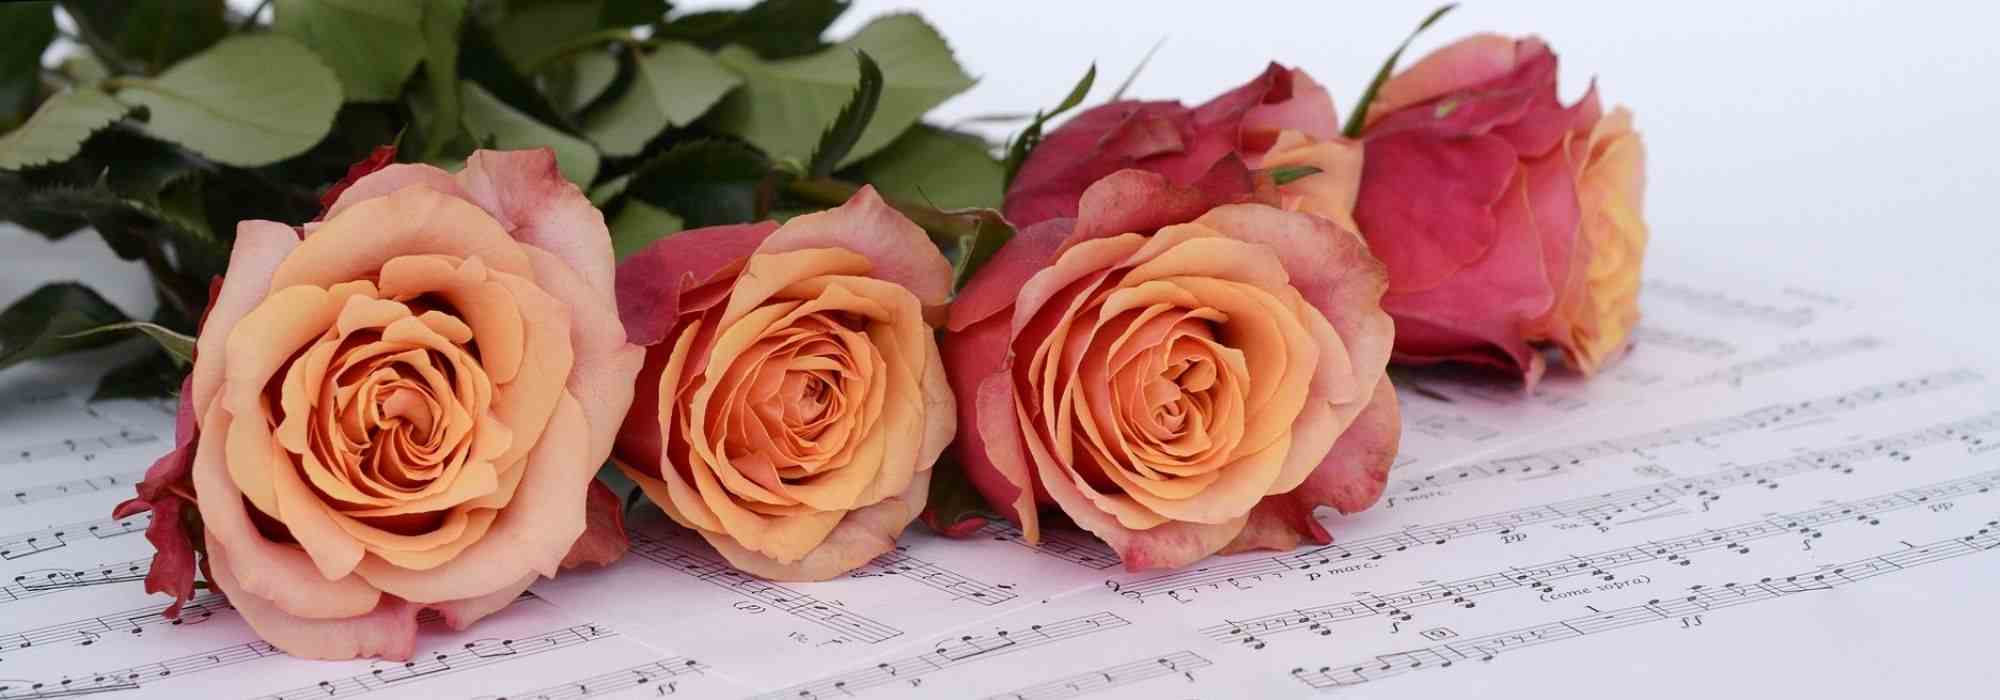 Les roses et la musique